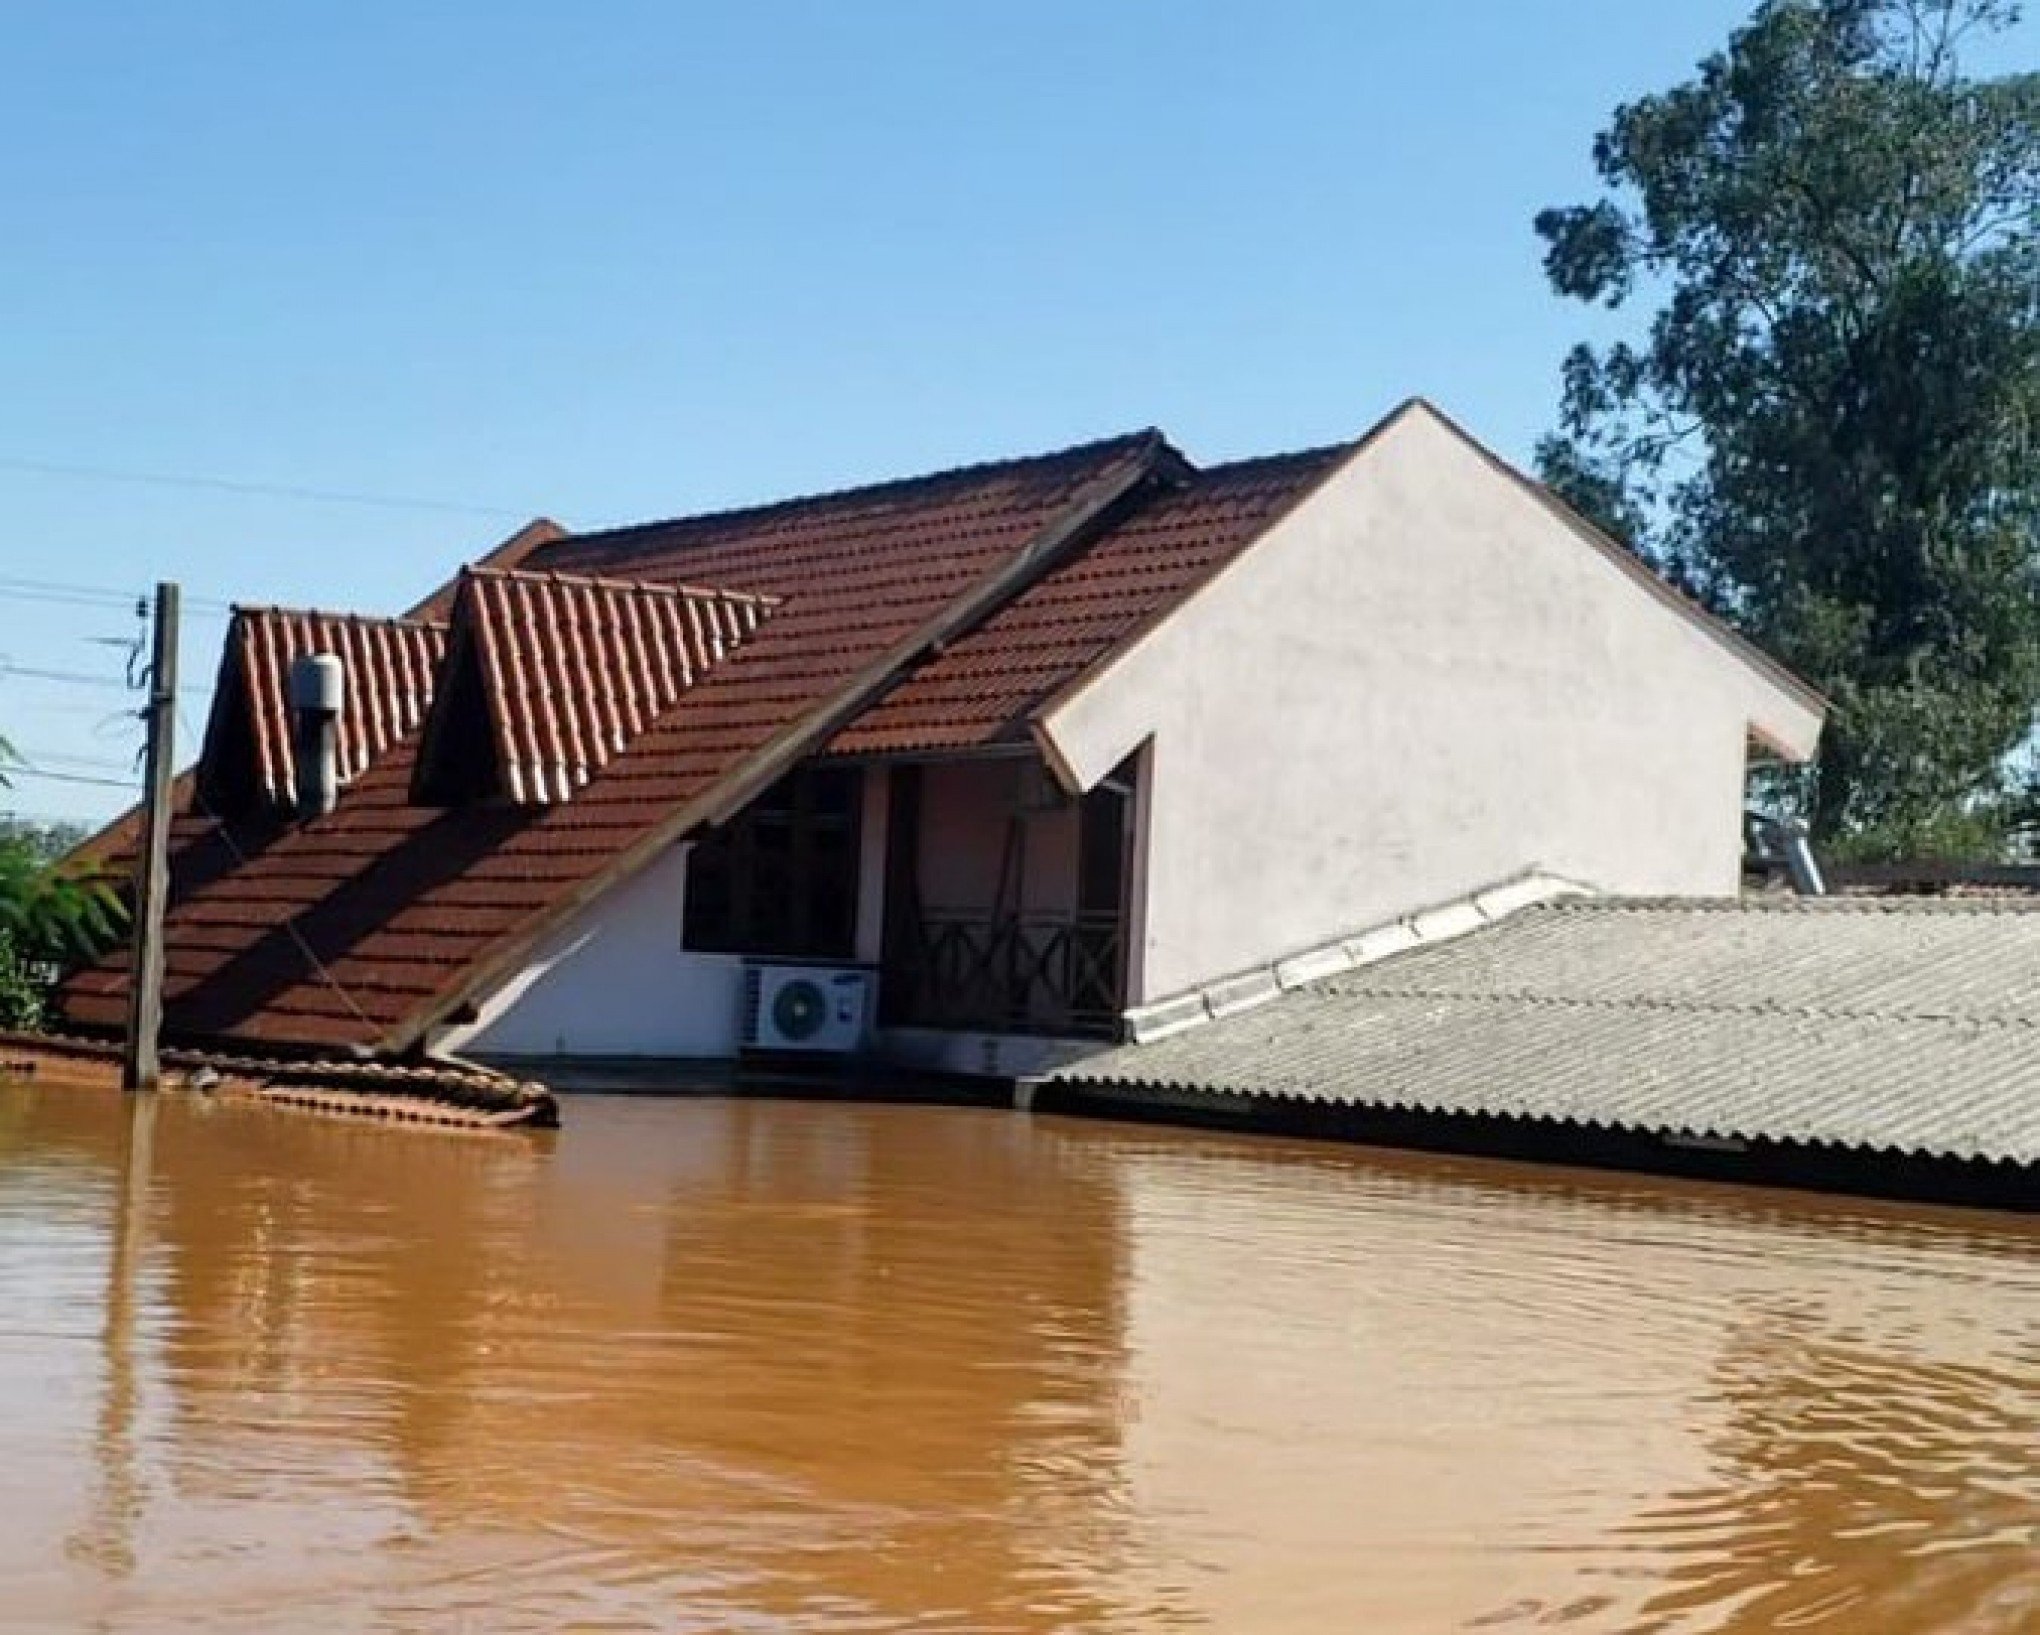 Prefeito publica foto de como ficou sua casa, atingida pela enchente no bairro Campina